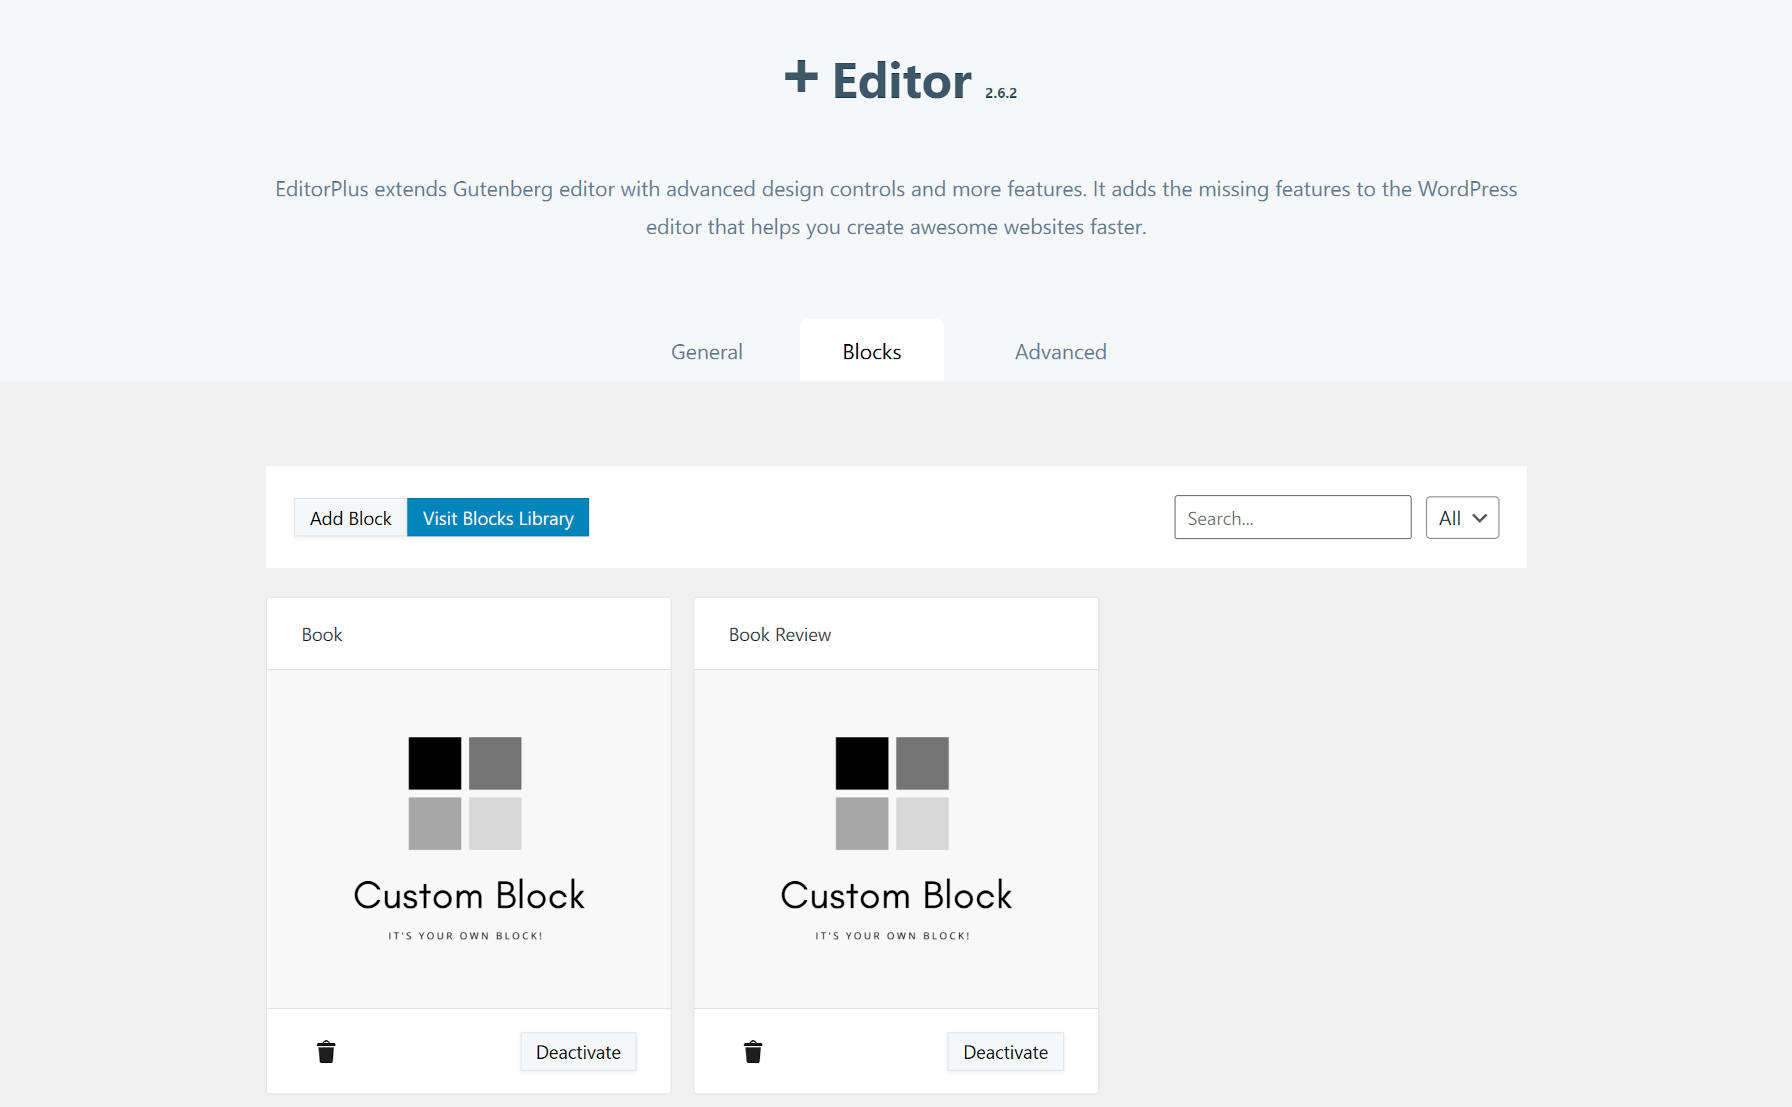 Editor Plus custom block feature in version 2.6.2.